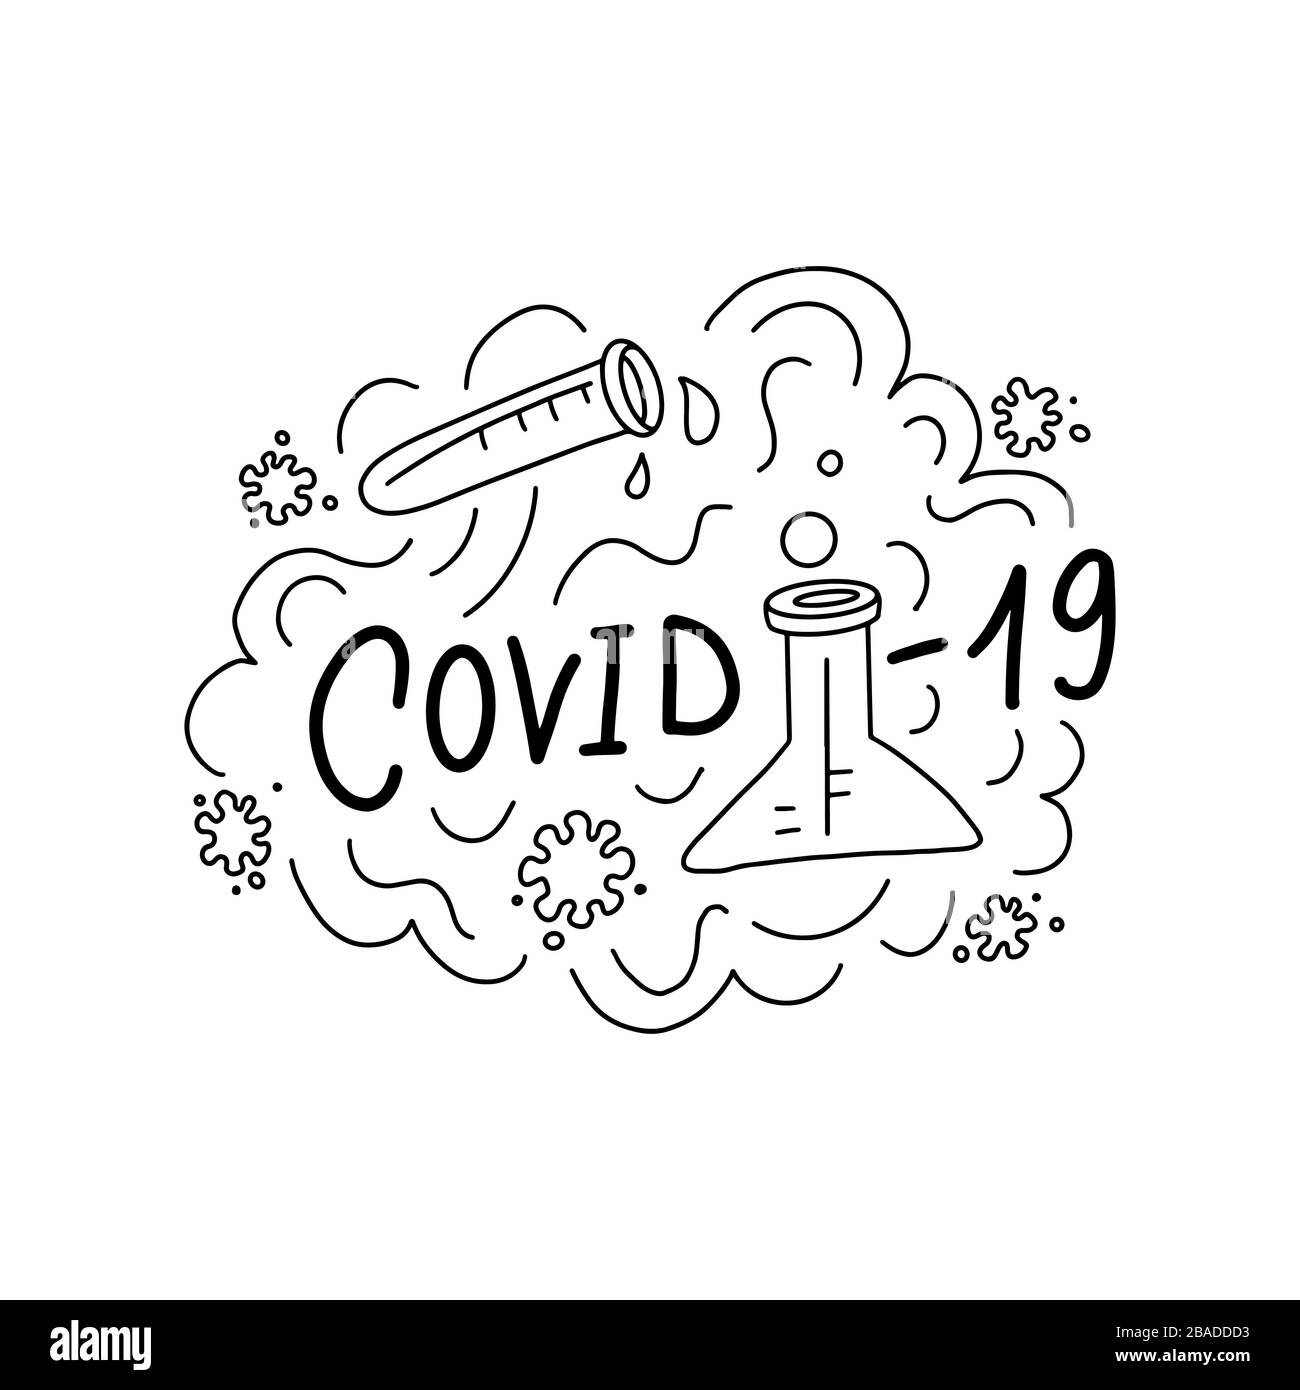 Covid-19-Vektorgrafiken. Grafikkonzept für Coronavirus Pandemie. Covid-19-Virus-Vektor-Text. 2019-nCoV. Medizinisches Labor, Schutzkonzept. Stock Vektor